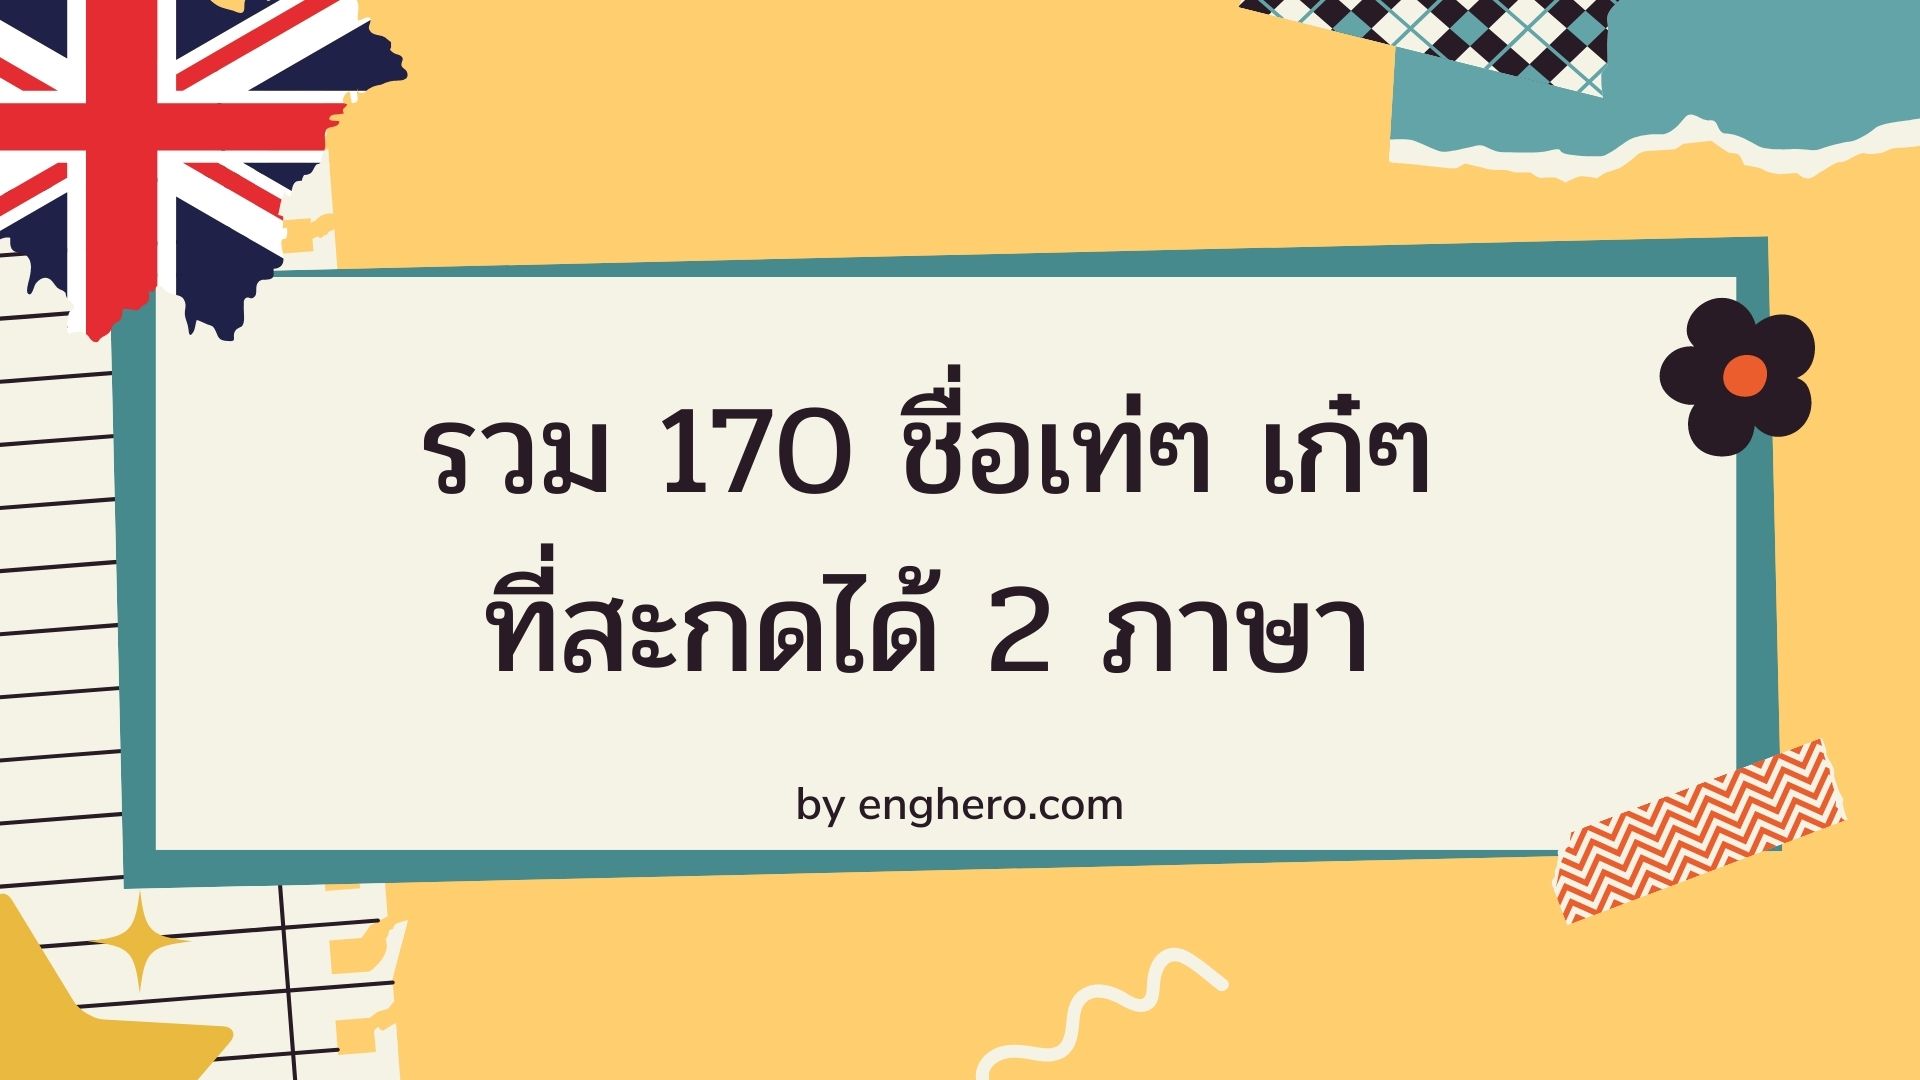 รวม 170 ชื่อเท่ๆ เก๋ๆ ที่สะกดได้ 2 ภาษา ทั้งภาษาไทยและภาษาอังกฤษ  พร้อมความหมาย | Eng Hero เรียนภาษาอังกฤษ ออนไลน์ ฟรี